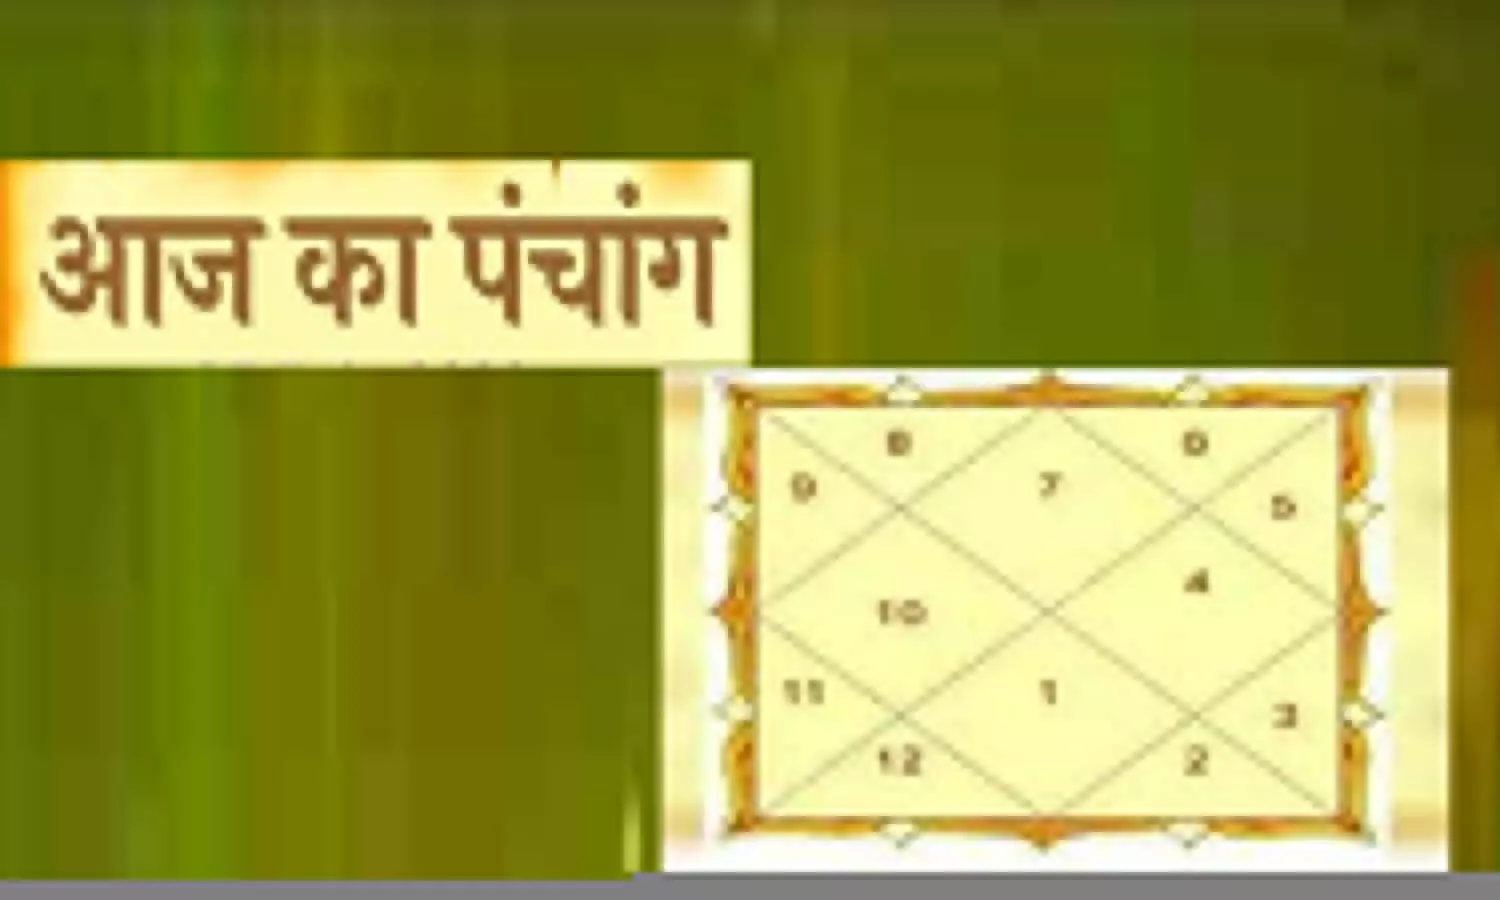 17 December 2022 Ka Panchang Tithi in Hindi: आज का पंचांग बताएगा, 17 दिसंबर को कब रहेगा राहुकाल, शुभ योग और सूर्योदय-सूर्यास्त का समय